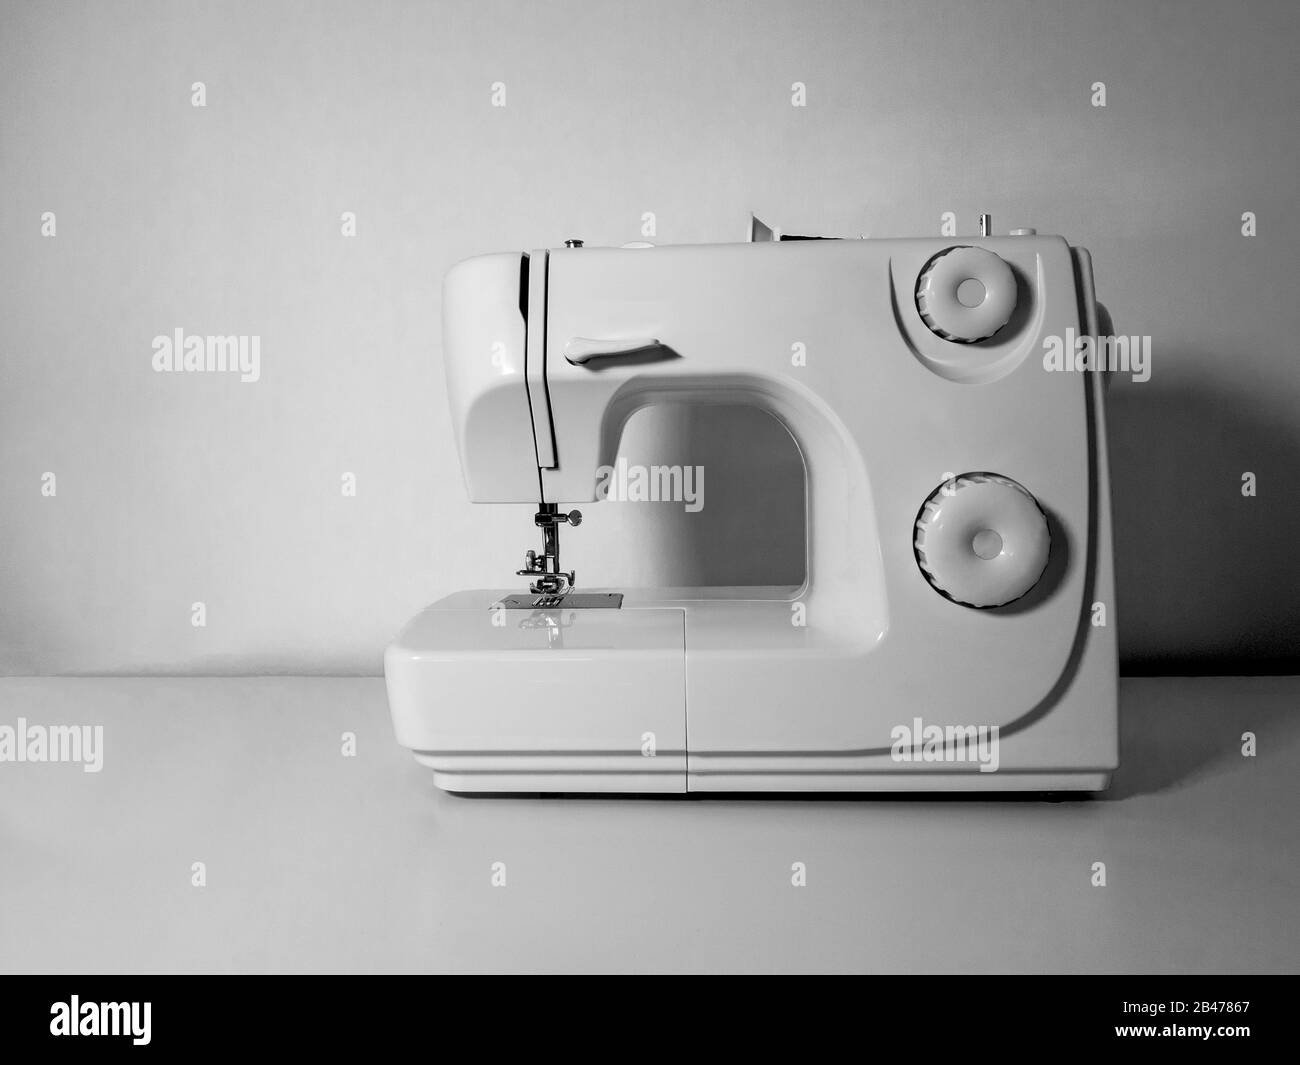 Machine à coudre vierge sur une table blanche et un fond de mur blanc. Image en noir et blanc. Concept d'artisanat. Banque D'Images